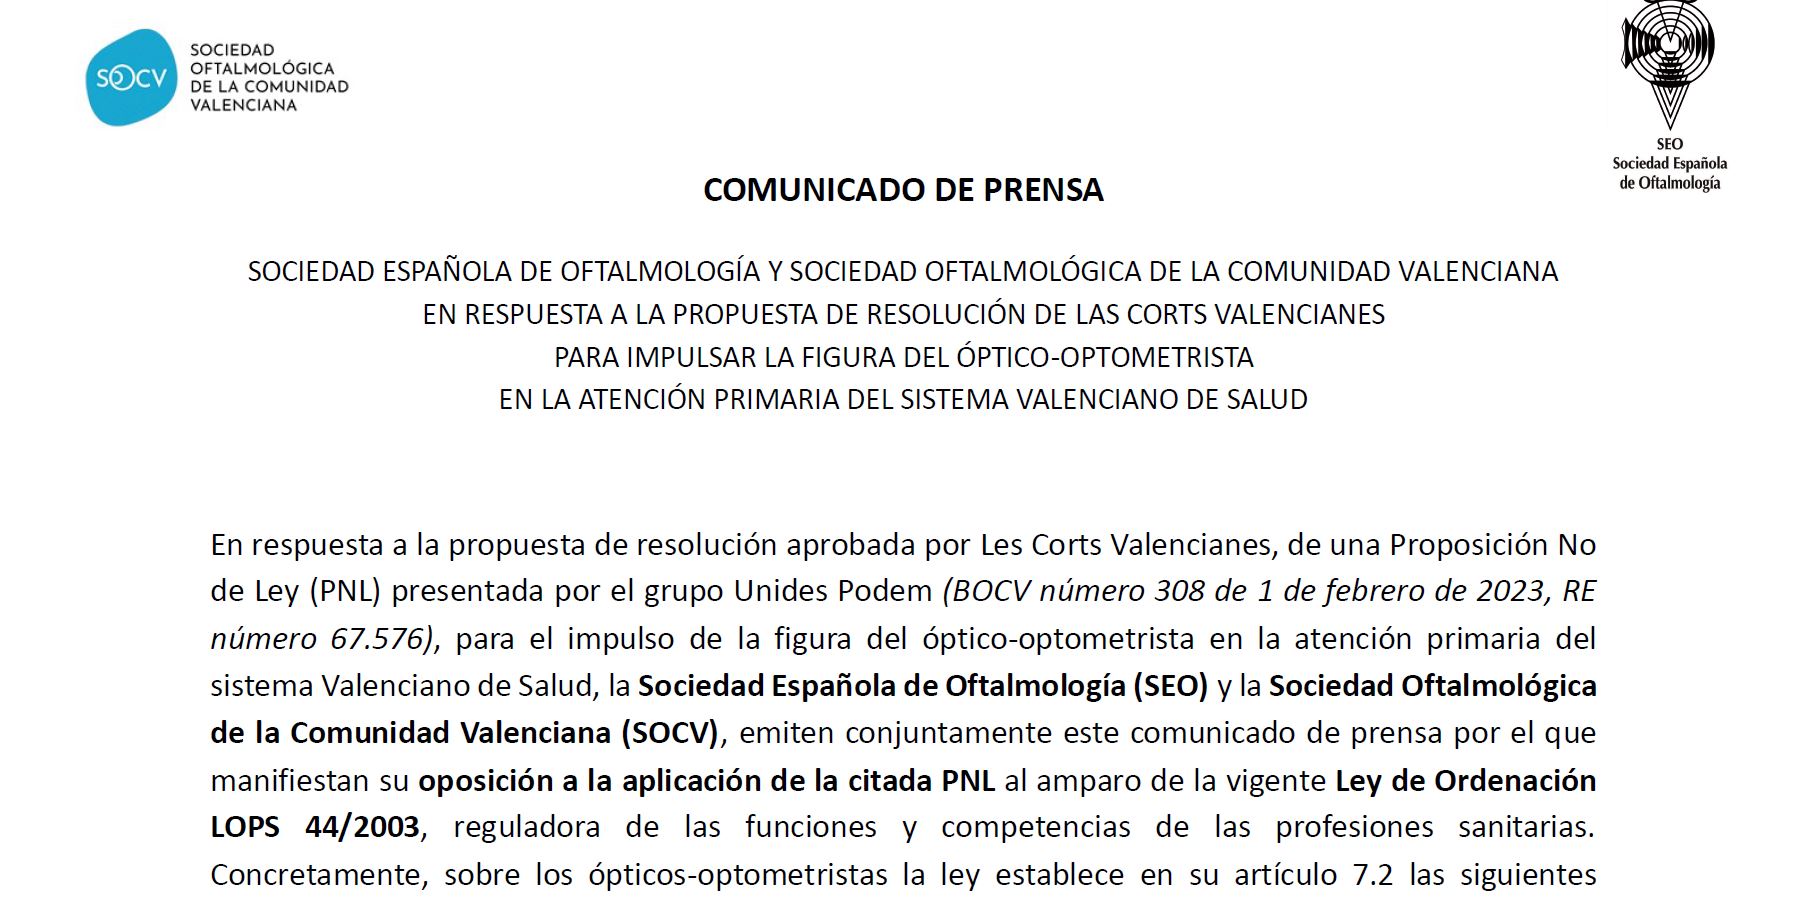 COMUNICADO DE PRENSA: SEO y SOCV en respuesta a la propuesta de resolución de las Corts Valencianes para impulsar la figura del óptico-optometrista en la atención primaria del Sistema Valenciano de Salud.